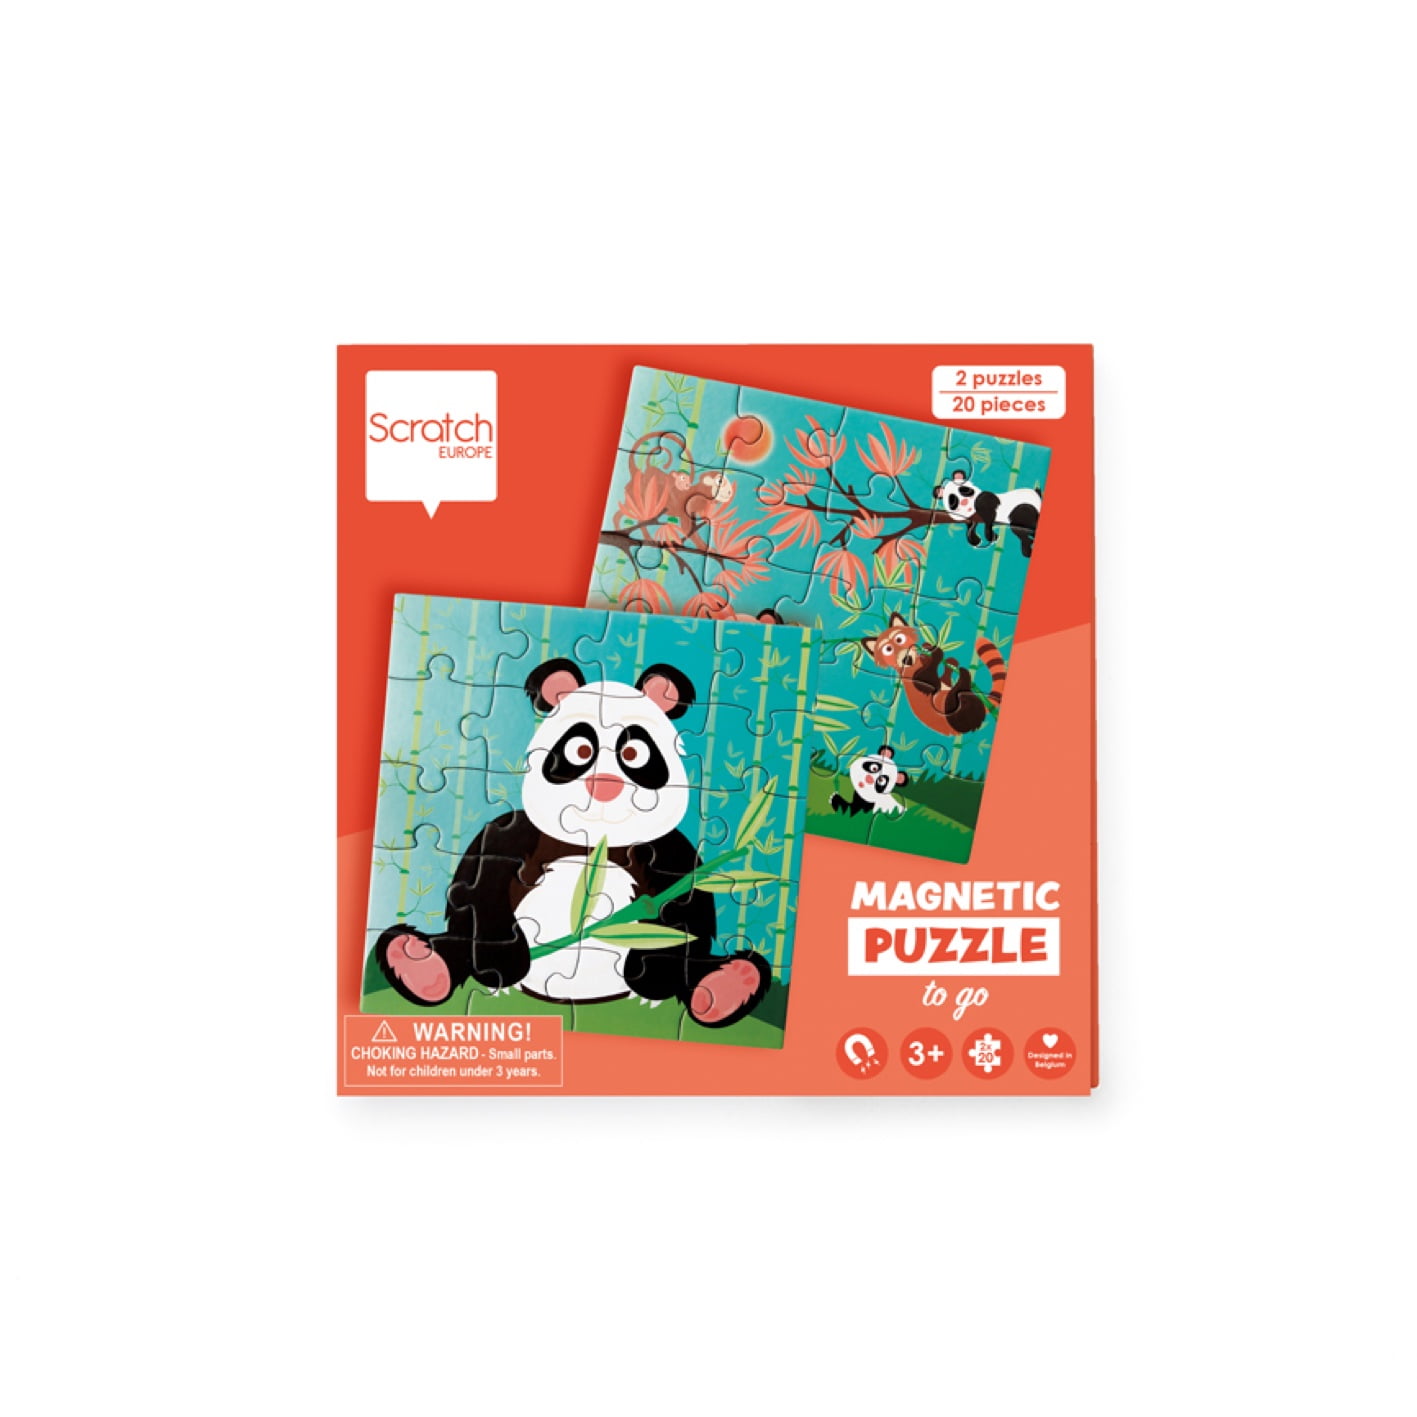 Scratch Magnetic puzzle book - Panda